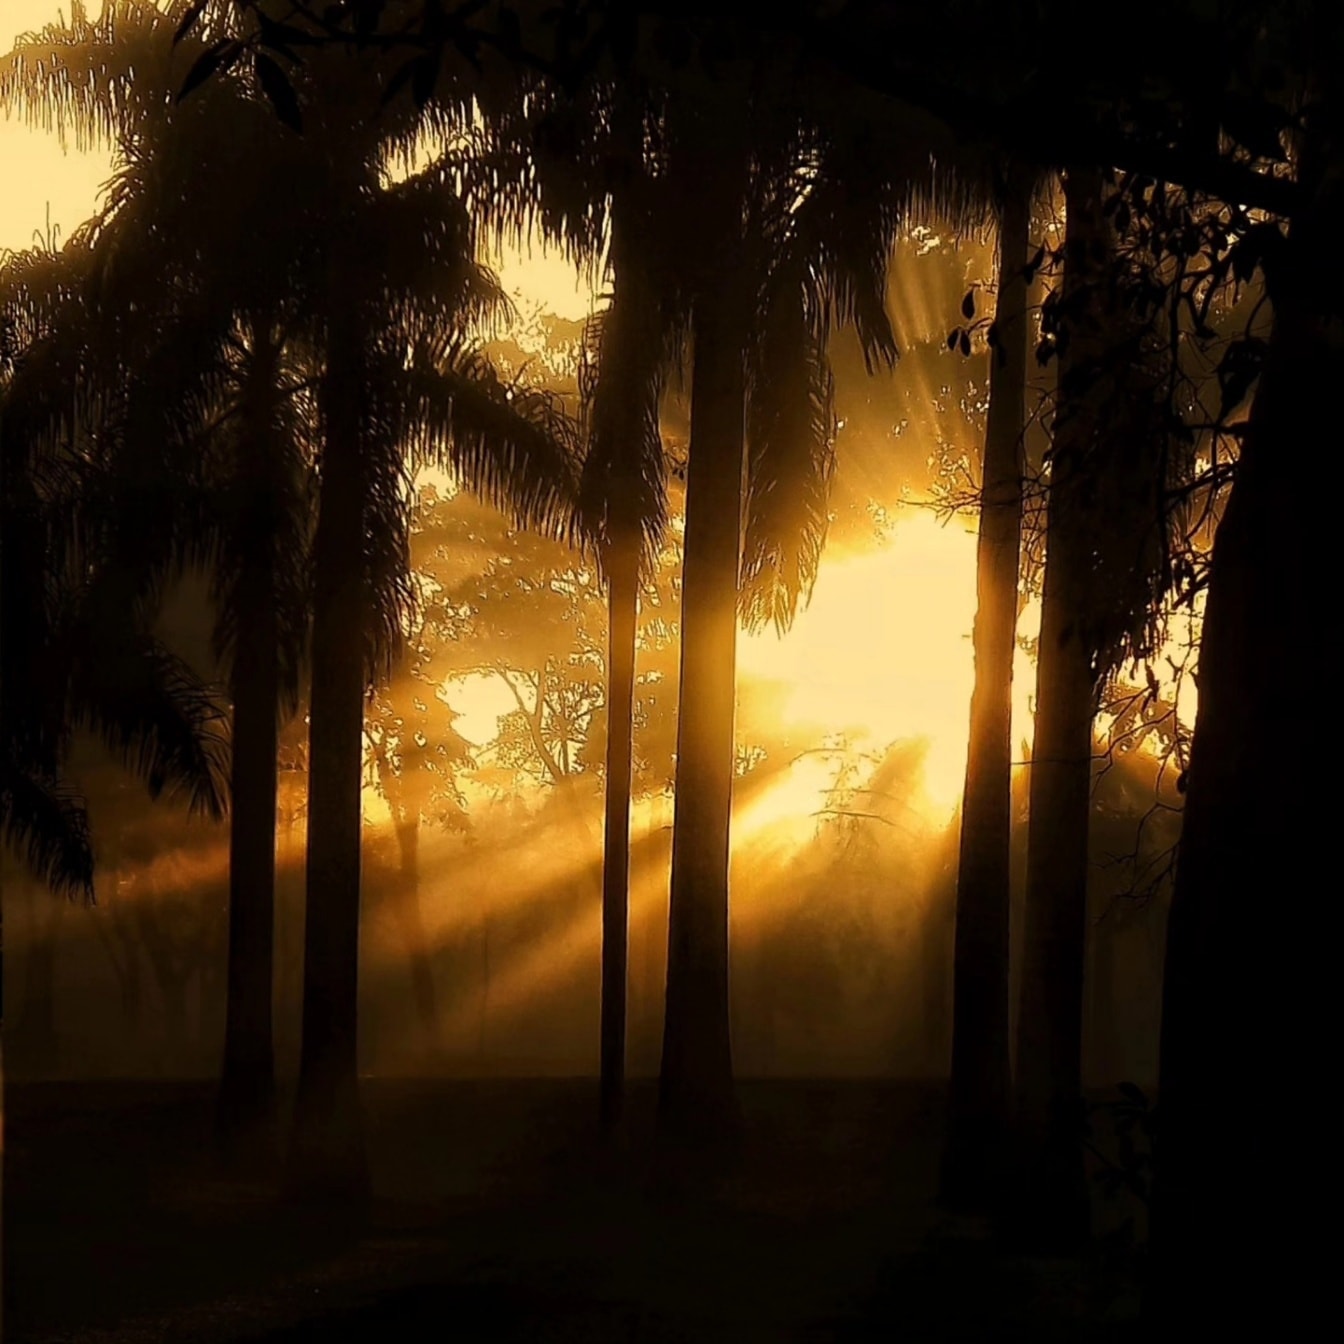 Gráfico de rayos brillantes del sol en un bosque oscuro con una silueta de árboles en sombra